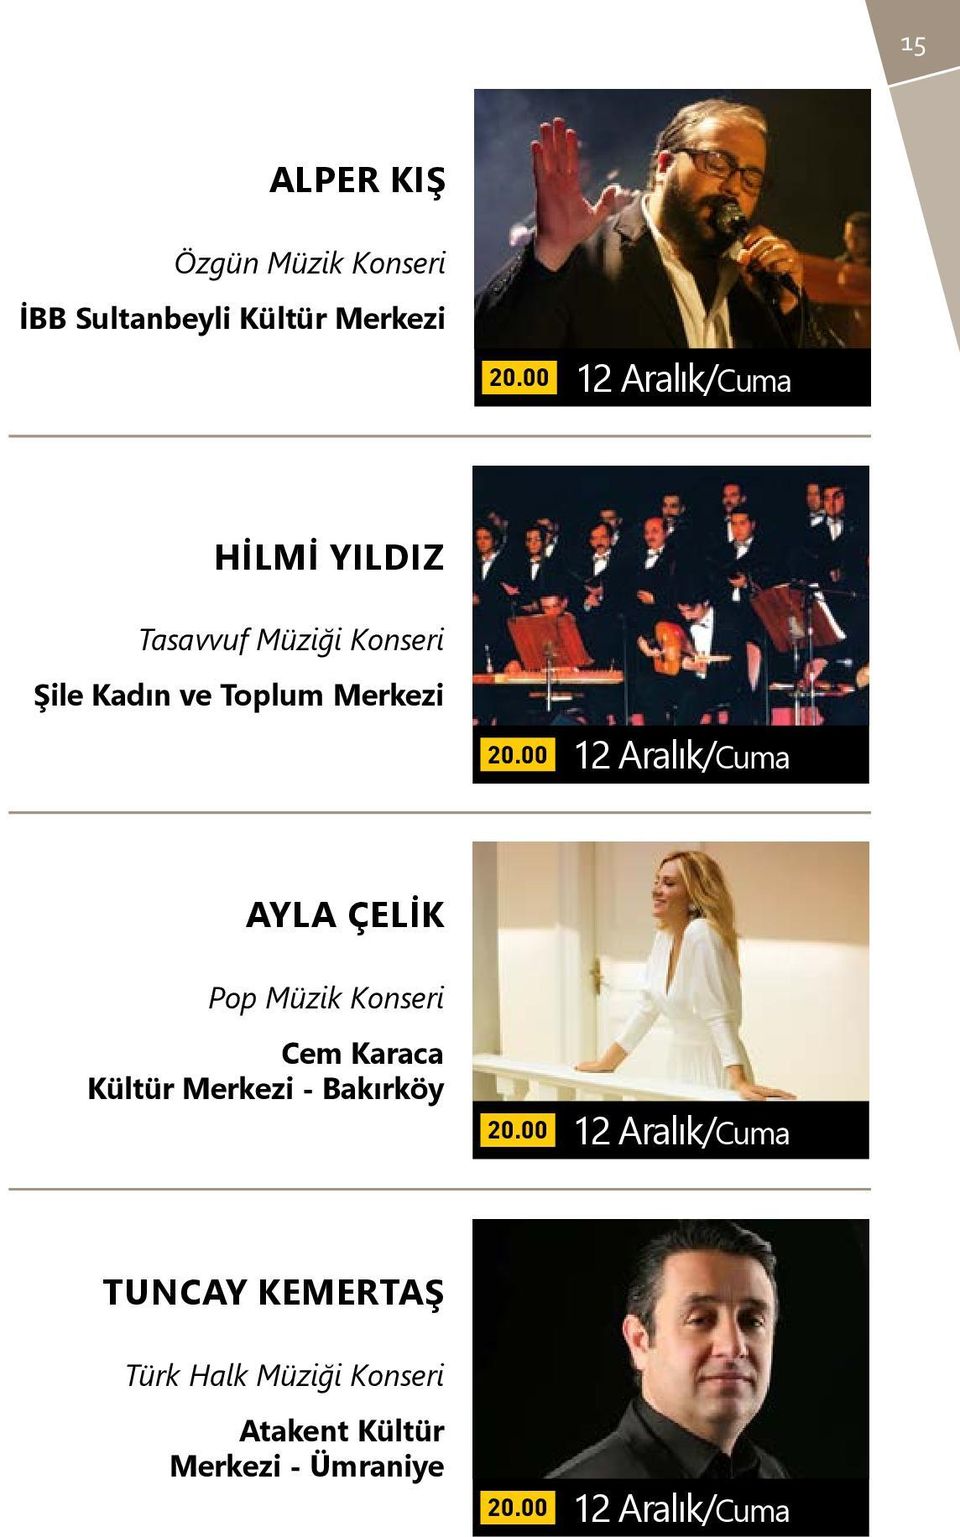 Ayla Çelik Pop Müzik Konseri Cem Karaca Kültür Merkezi - Bakırköy 12 Aralık/Cuma